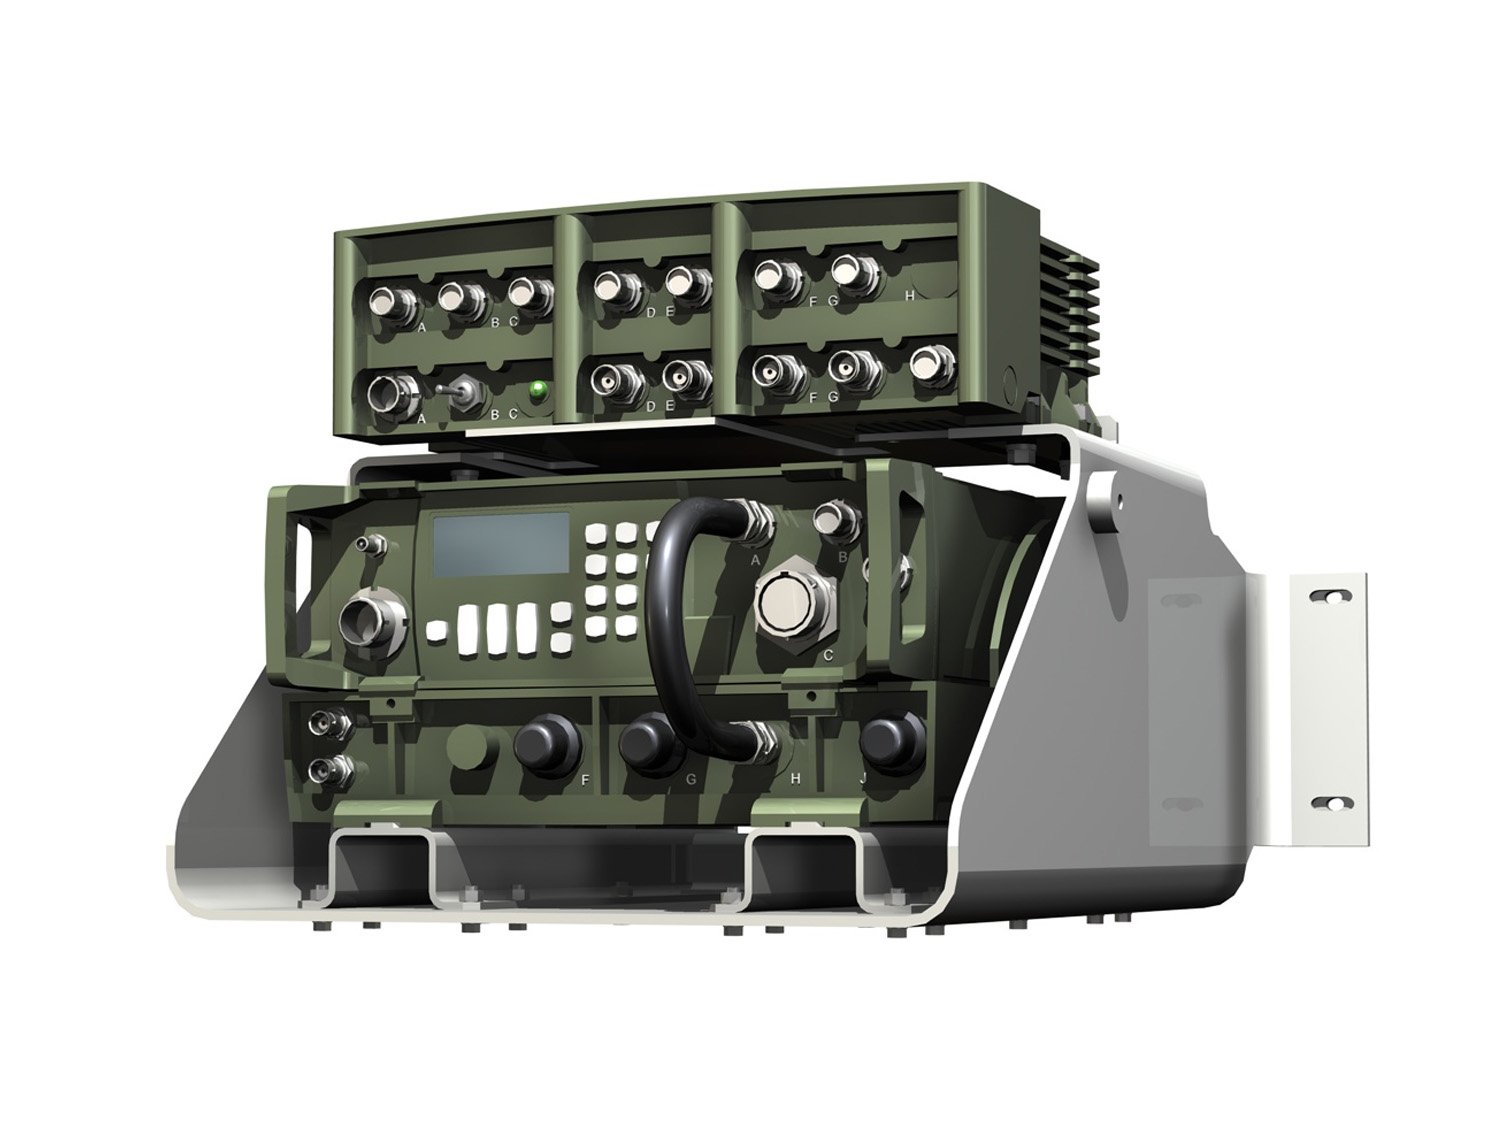 modèle 3D de Radio VHF SMDSM de survie - TurboSquid 1594450